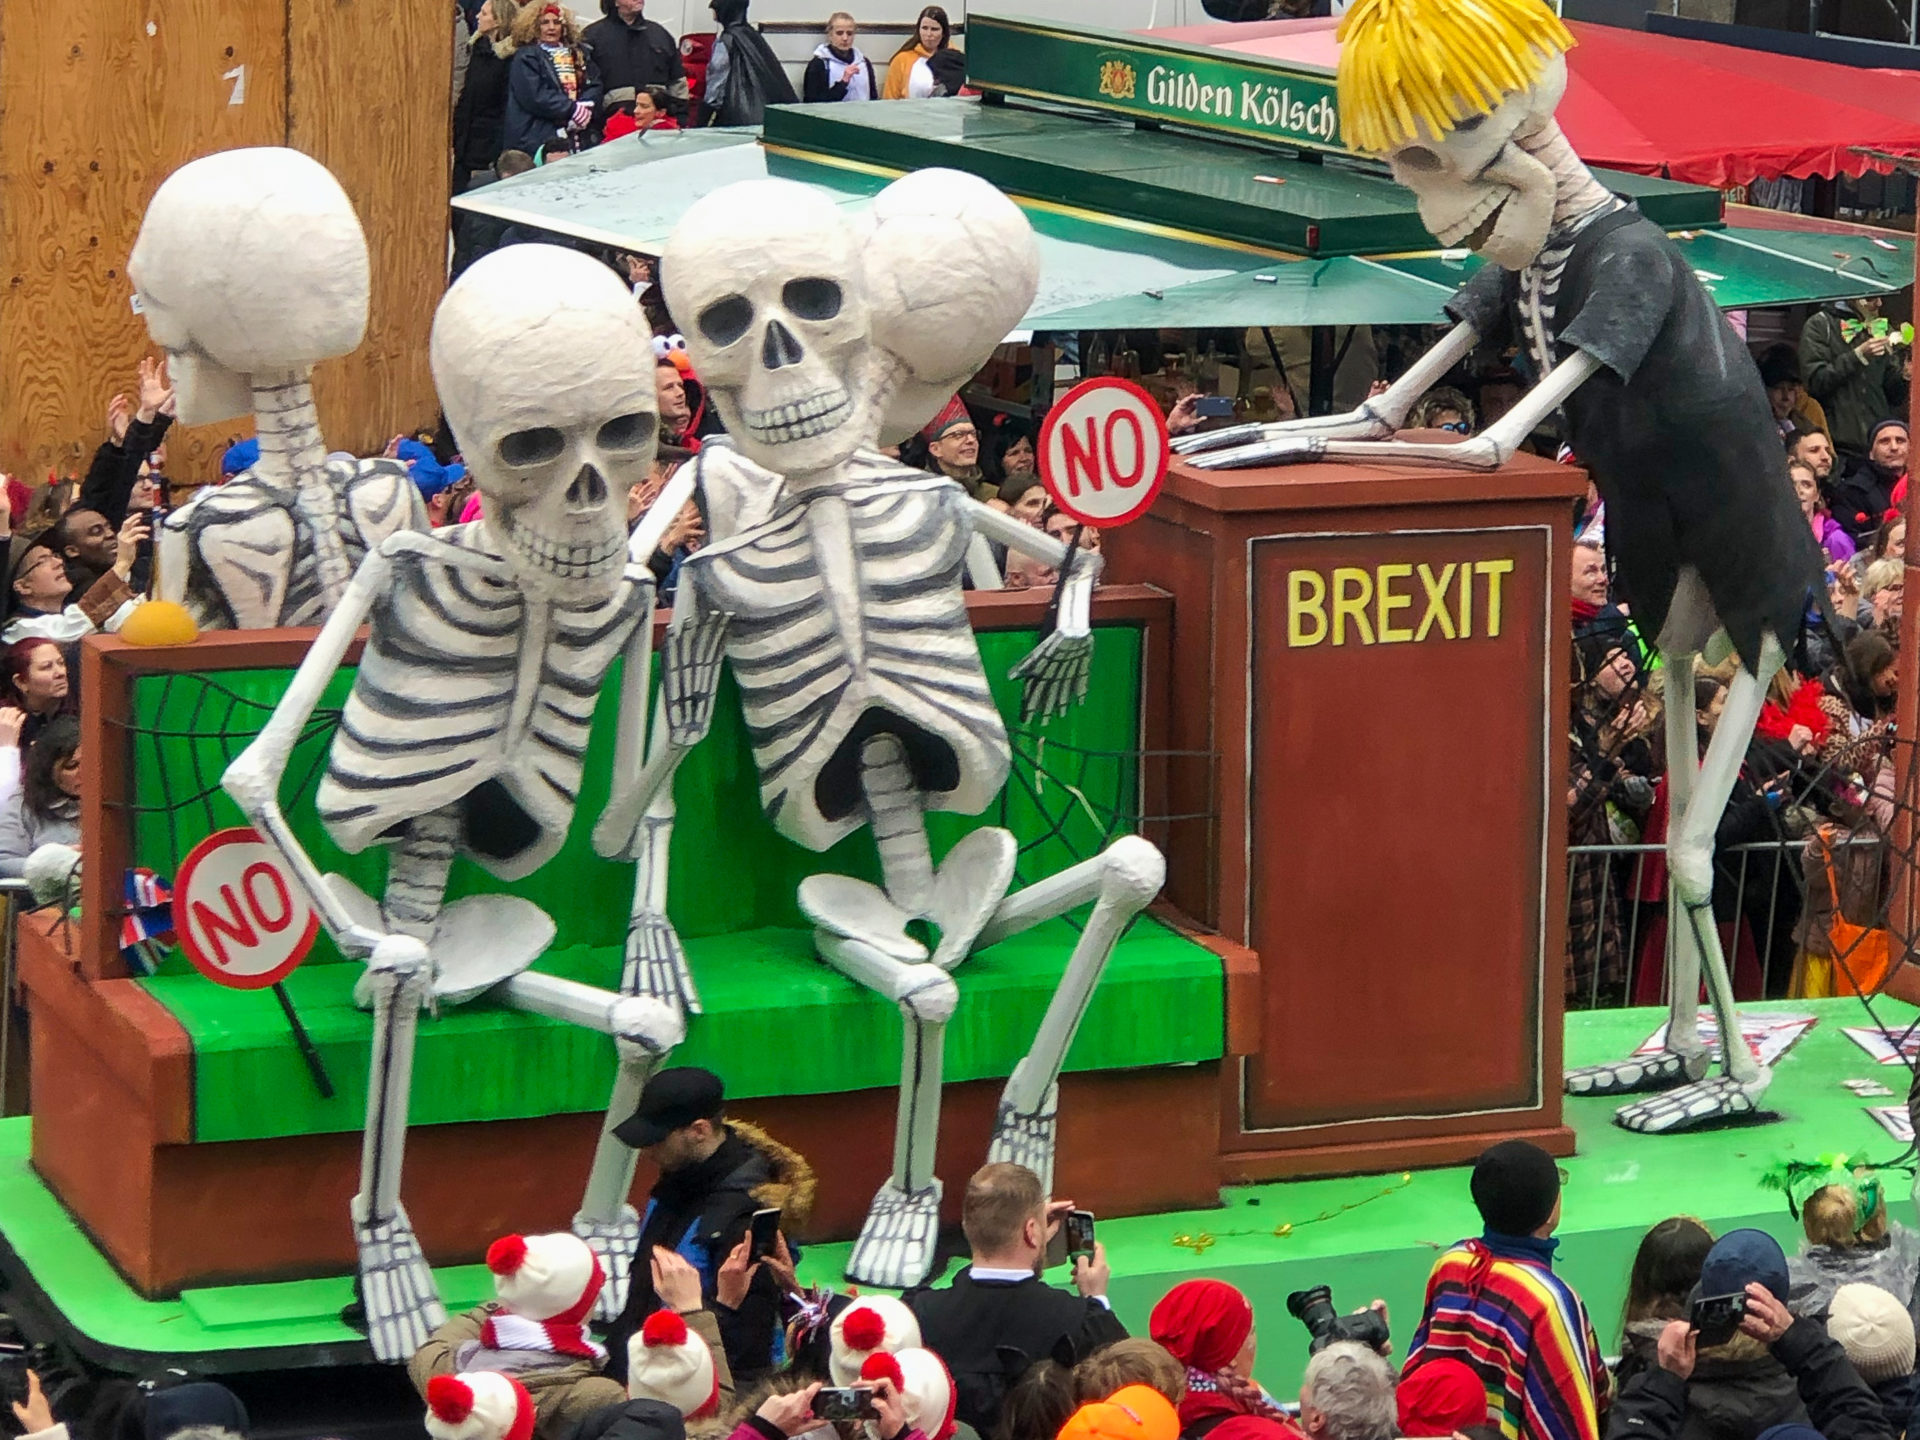 Karnevalswagen in Köln mit Brexitmotiv